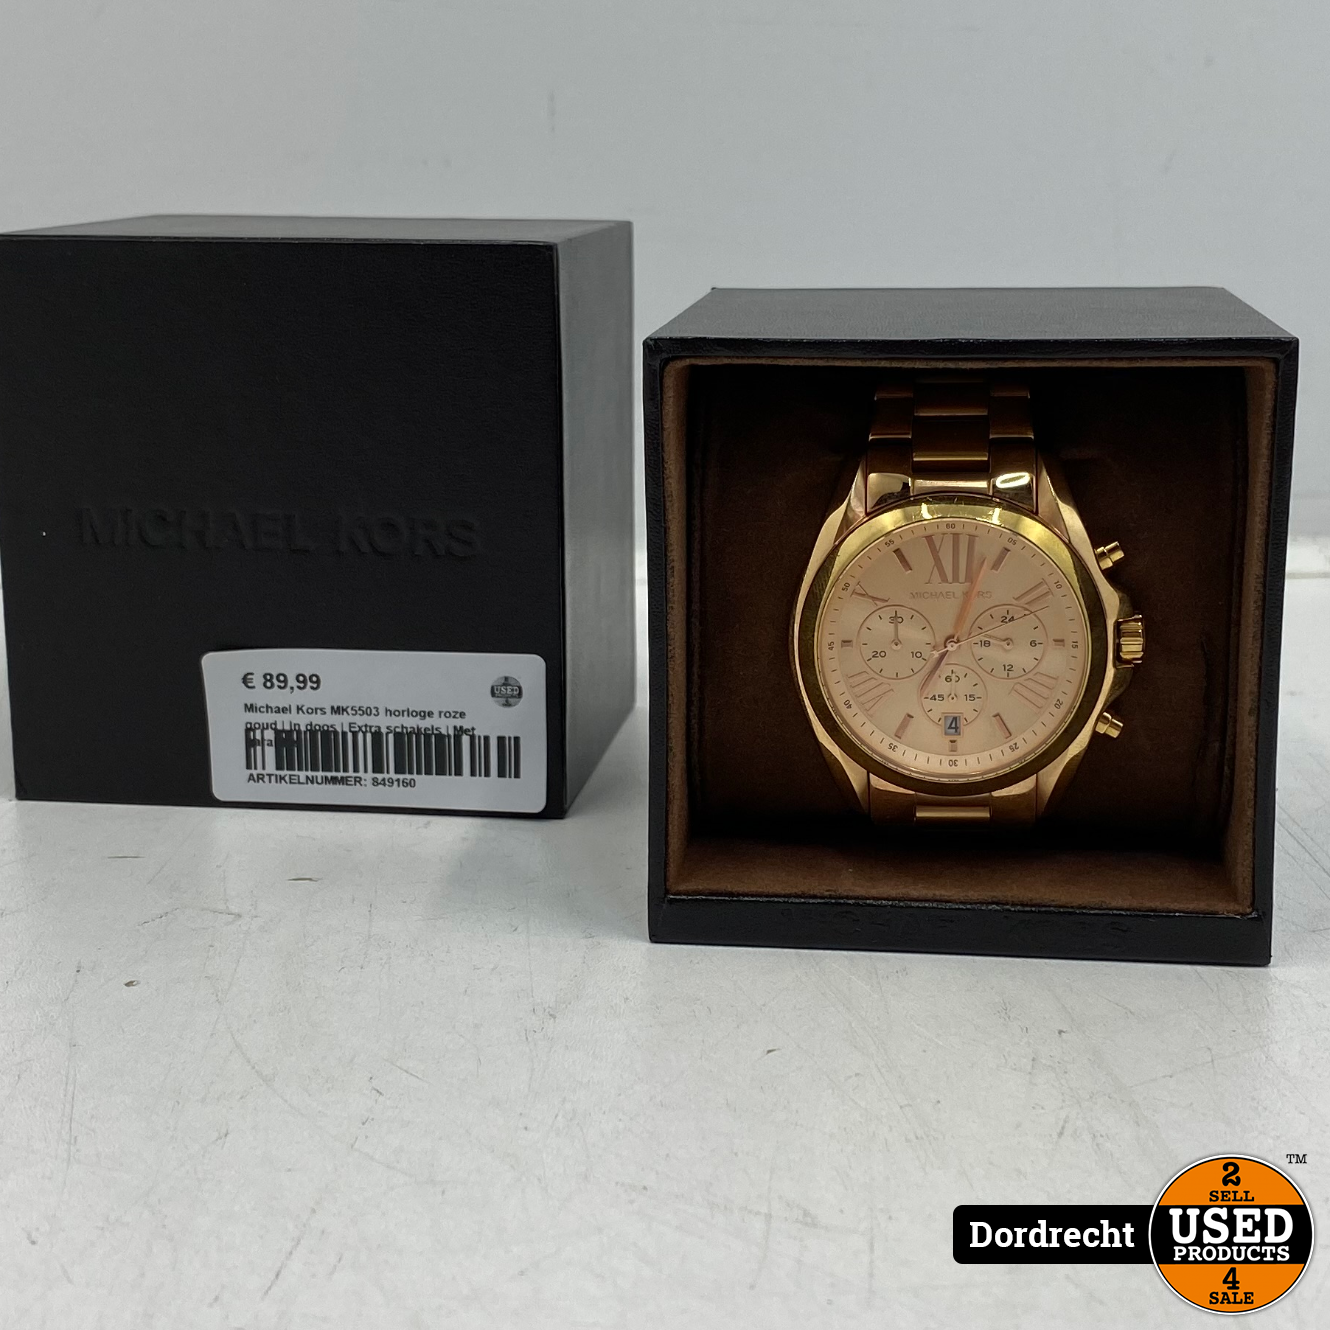 Michael Kors MK5503 roze goud | In doos | Extra schakels | Met garantie - Used Products Dordrecht